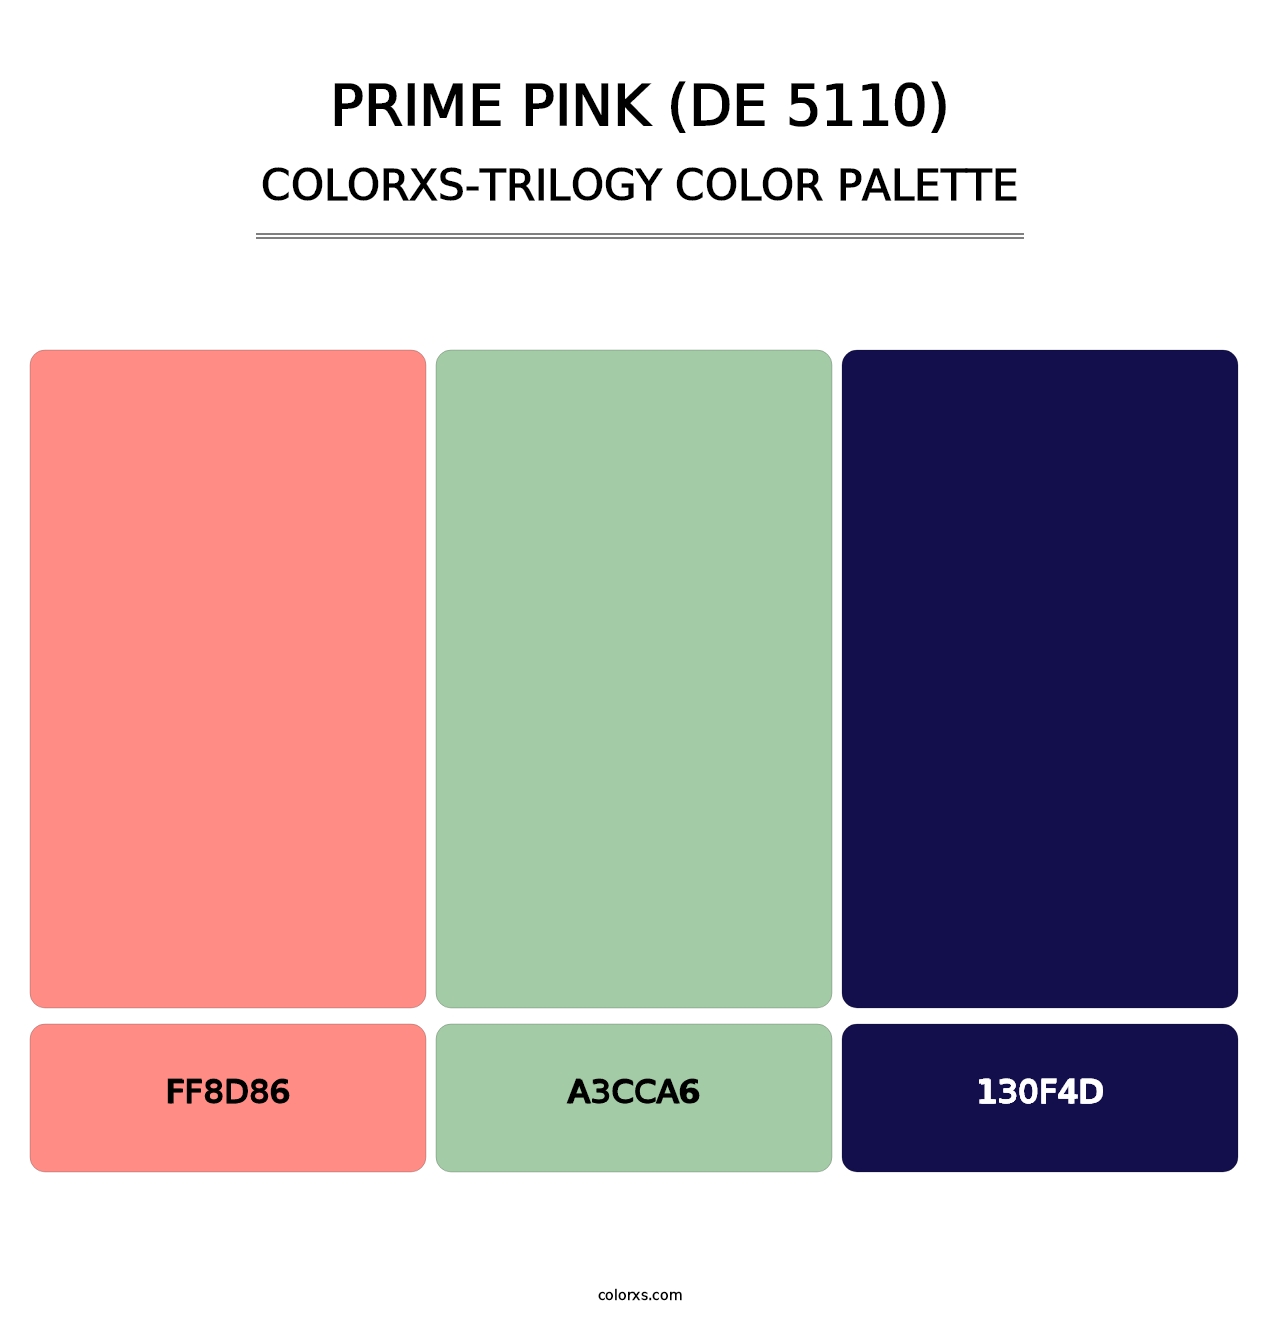 Prime Pink (DE 5110) - Colorxs Trilogy Palette